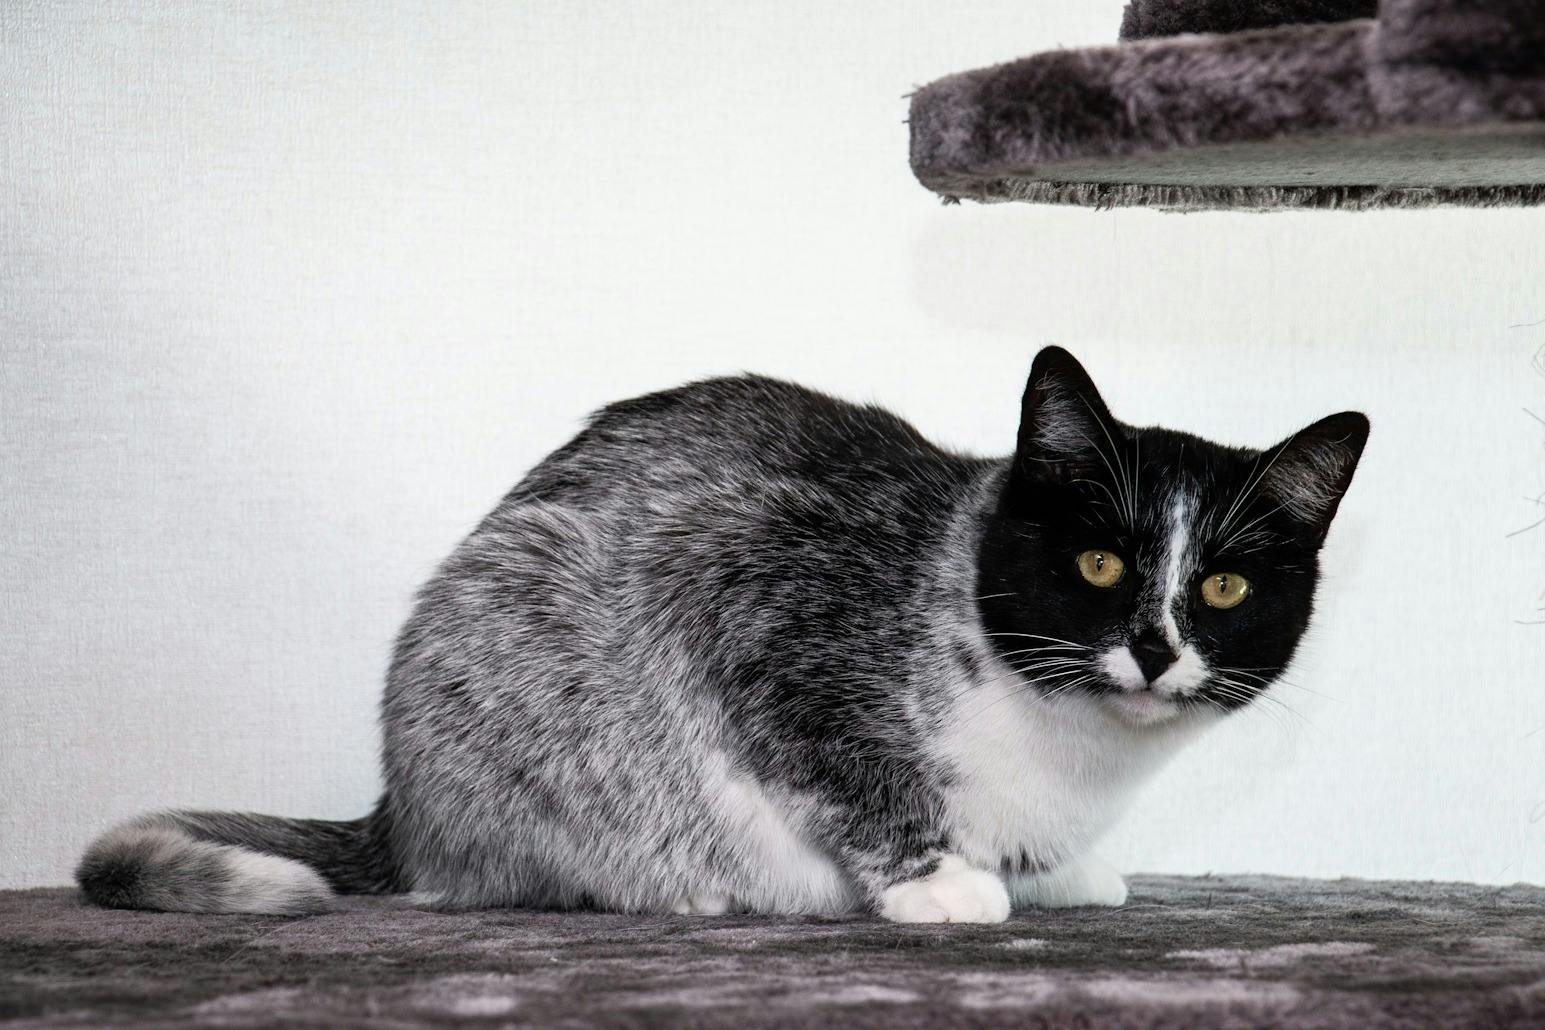 Cat with salmiak coat color